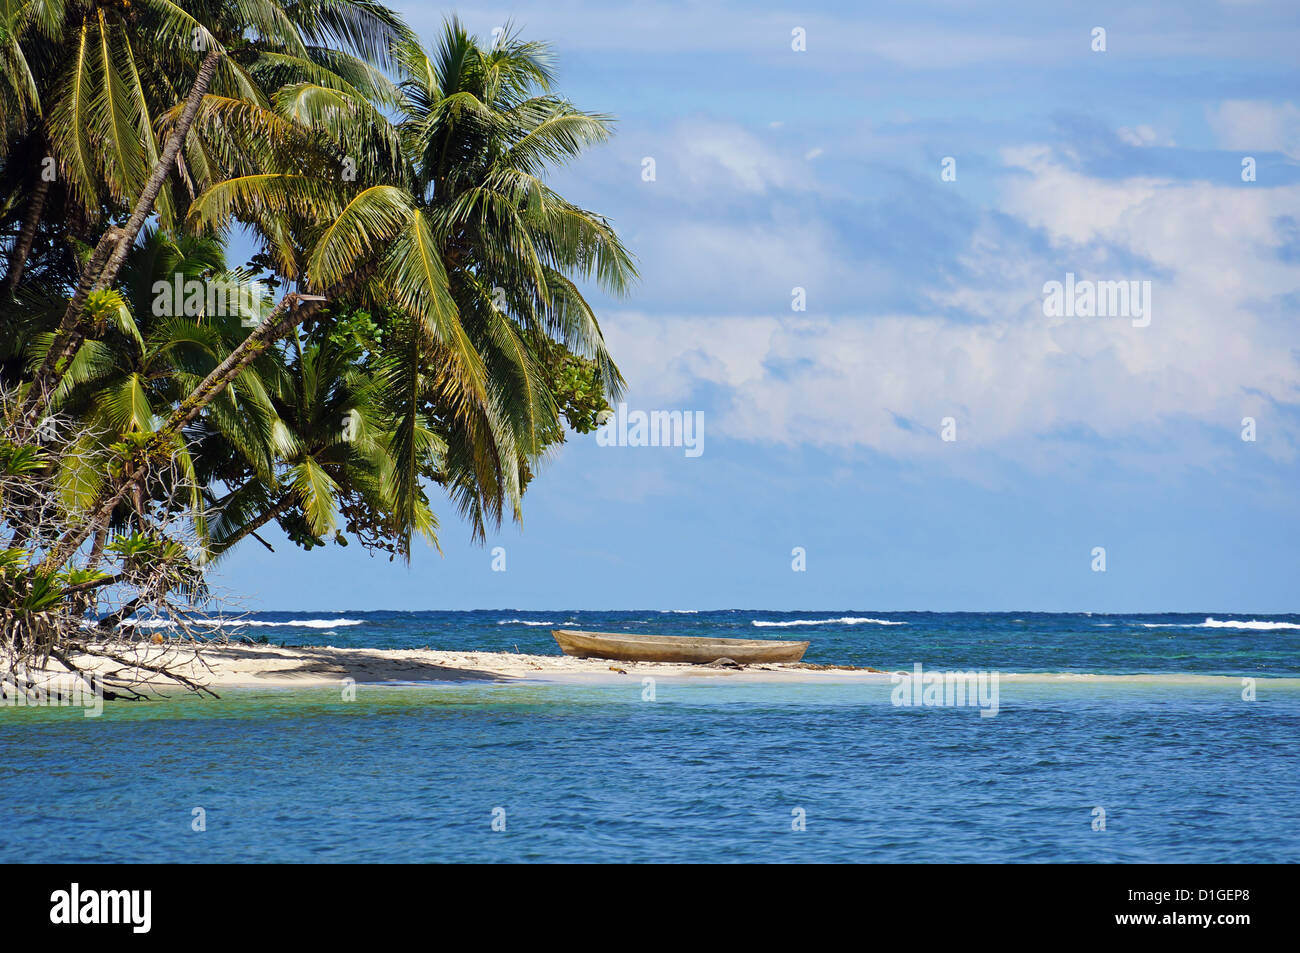 Plage tropicale avec de magnifiques cocotiers et d'une pirogue, Bocas del Toro, Panama, la mer des Caraïbes Banque D'Images